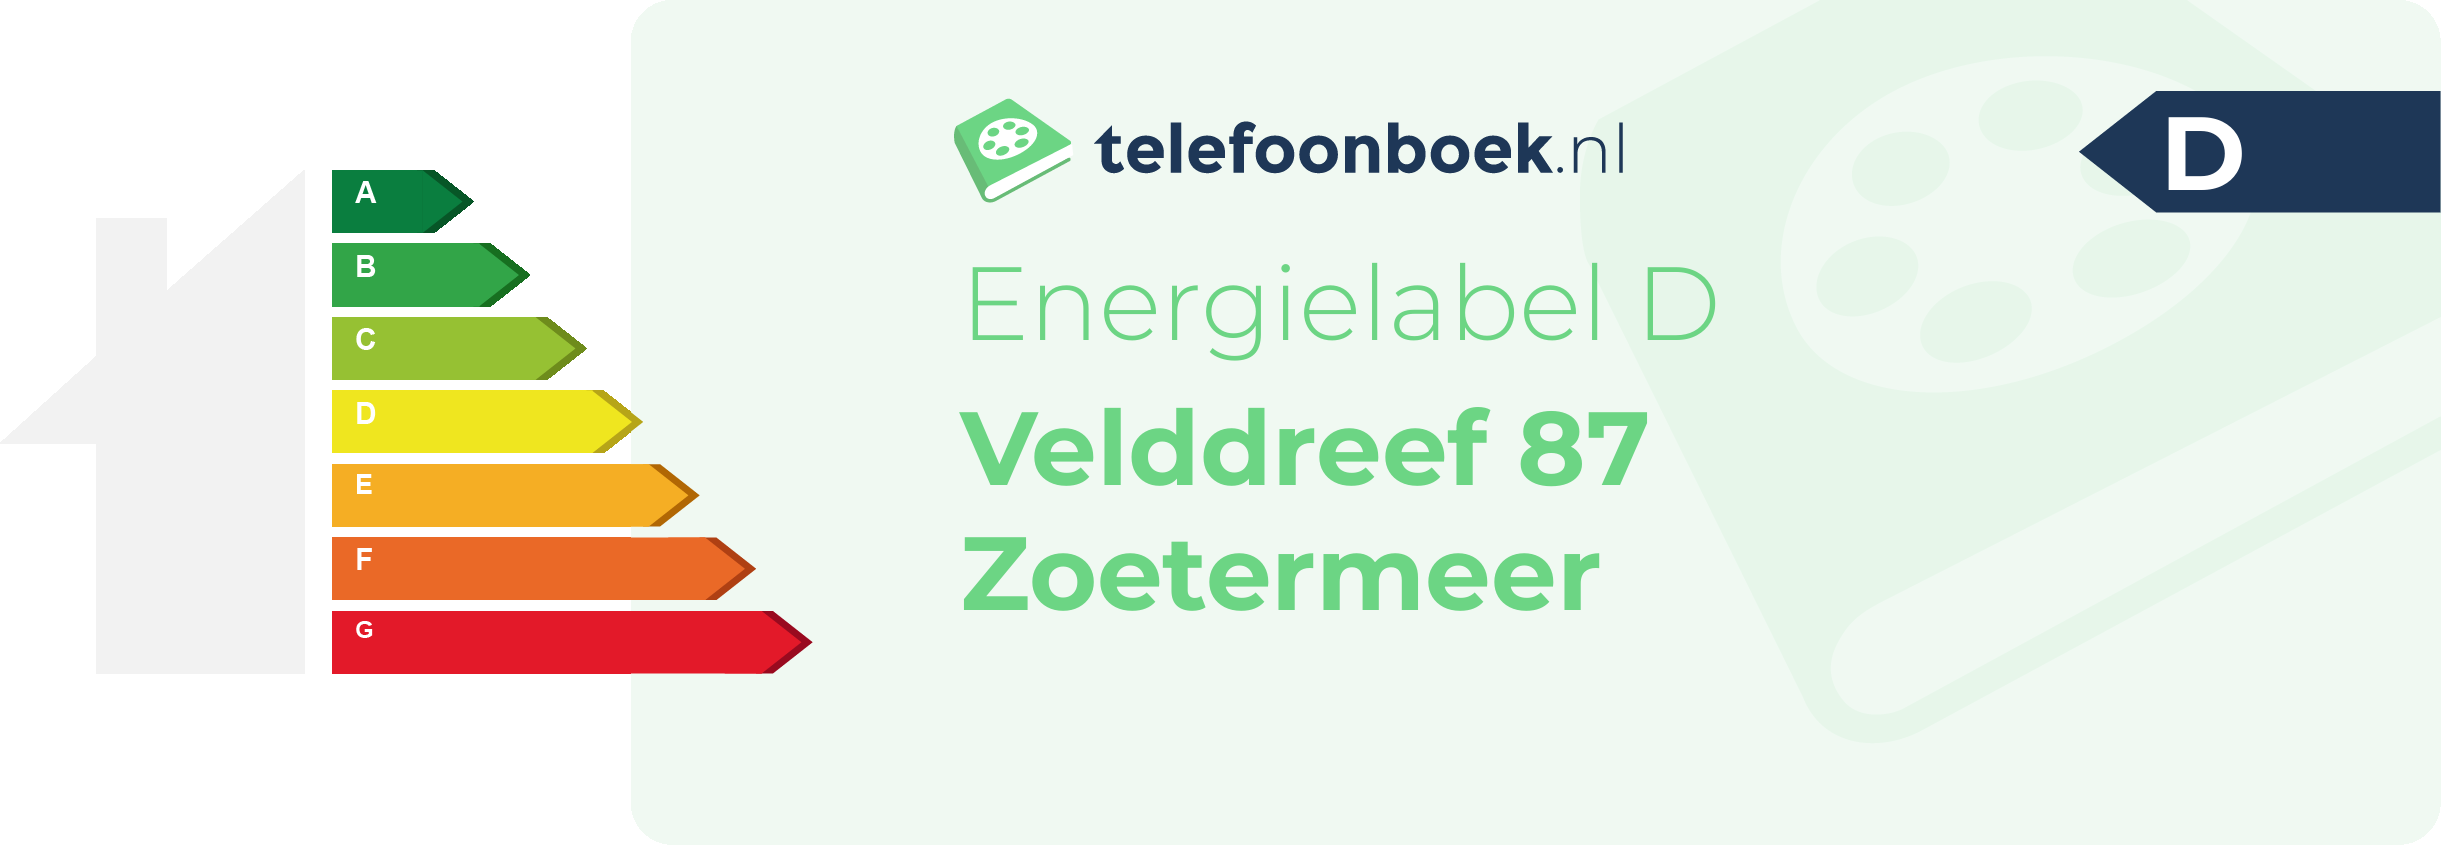 Energielabel Velddreef 87 Zoetermeer